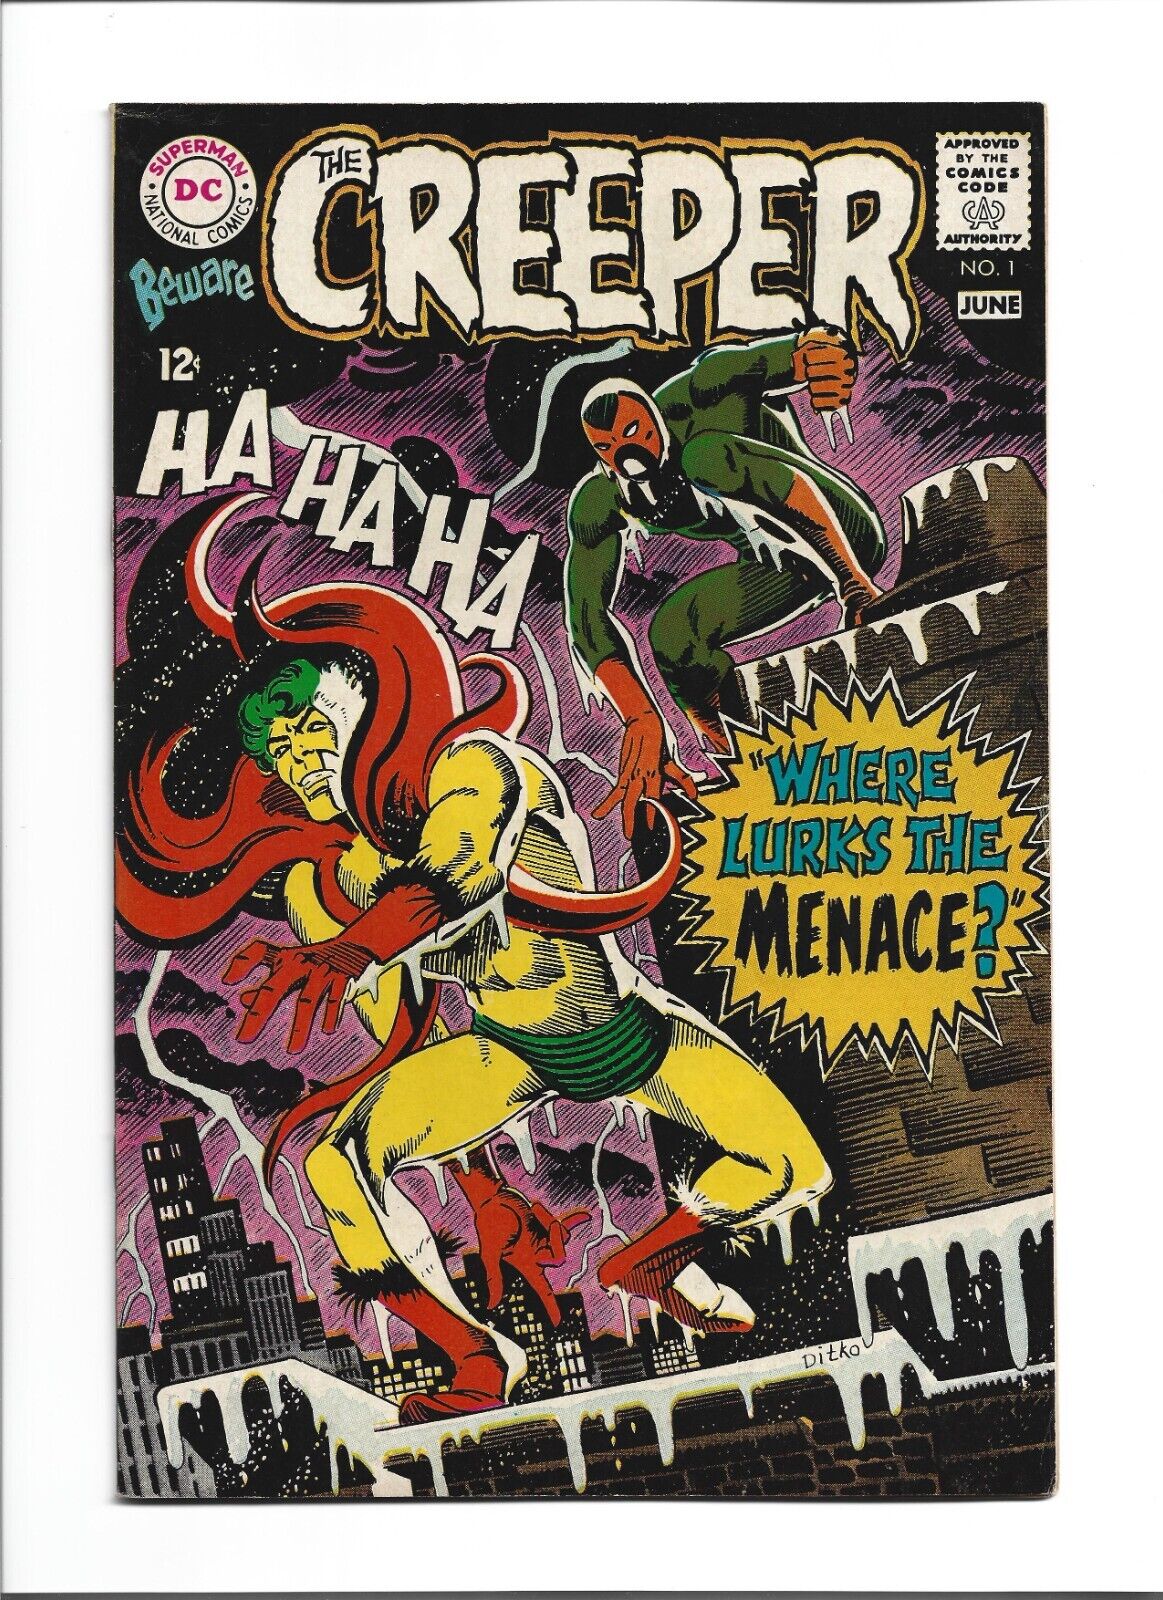 Beware The Creeper #1 (May-June 1968, DC) VF- (7.5) Ditko Art 